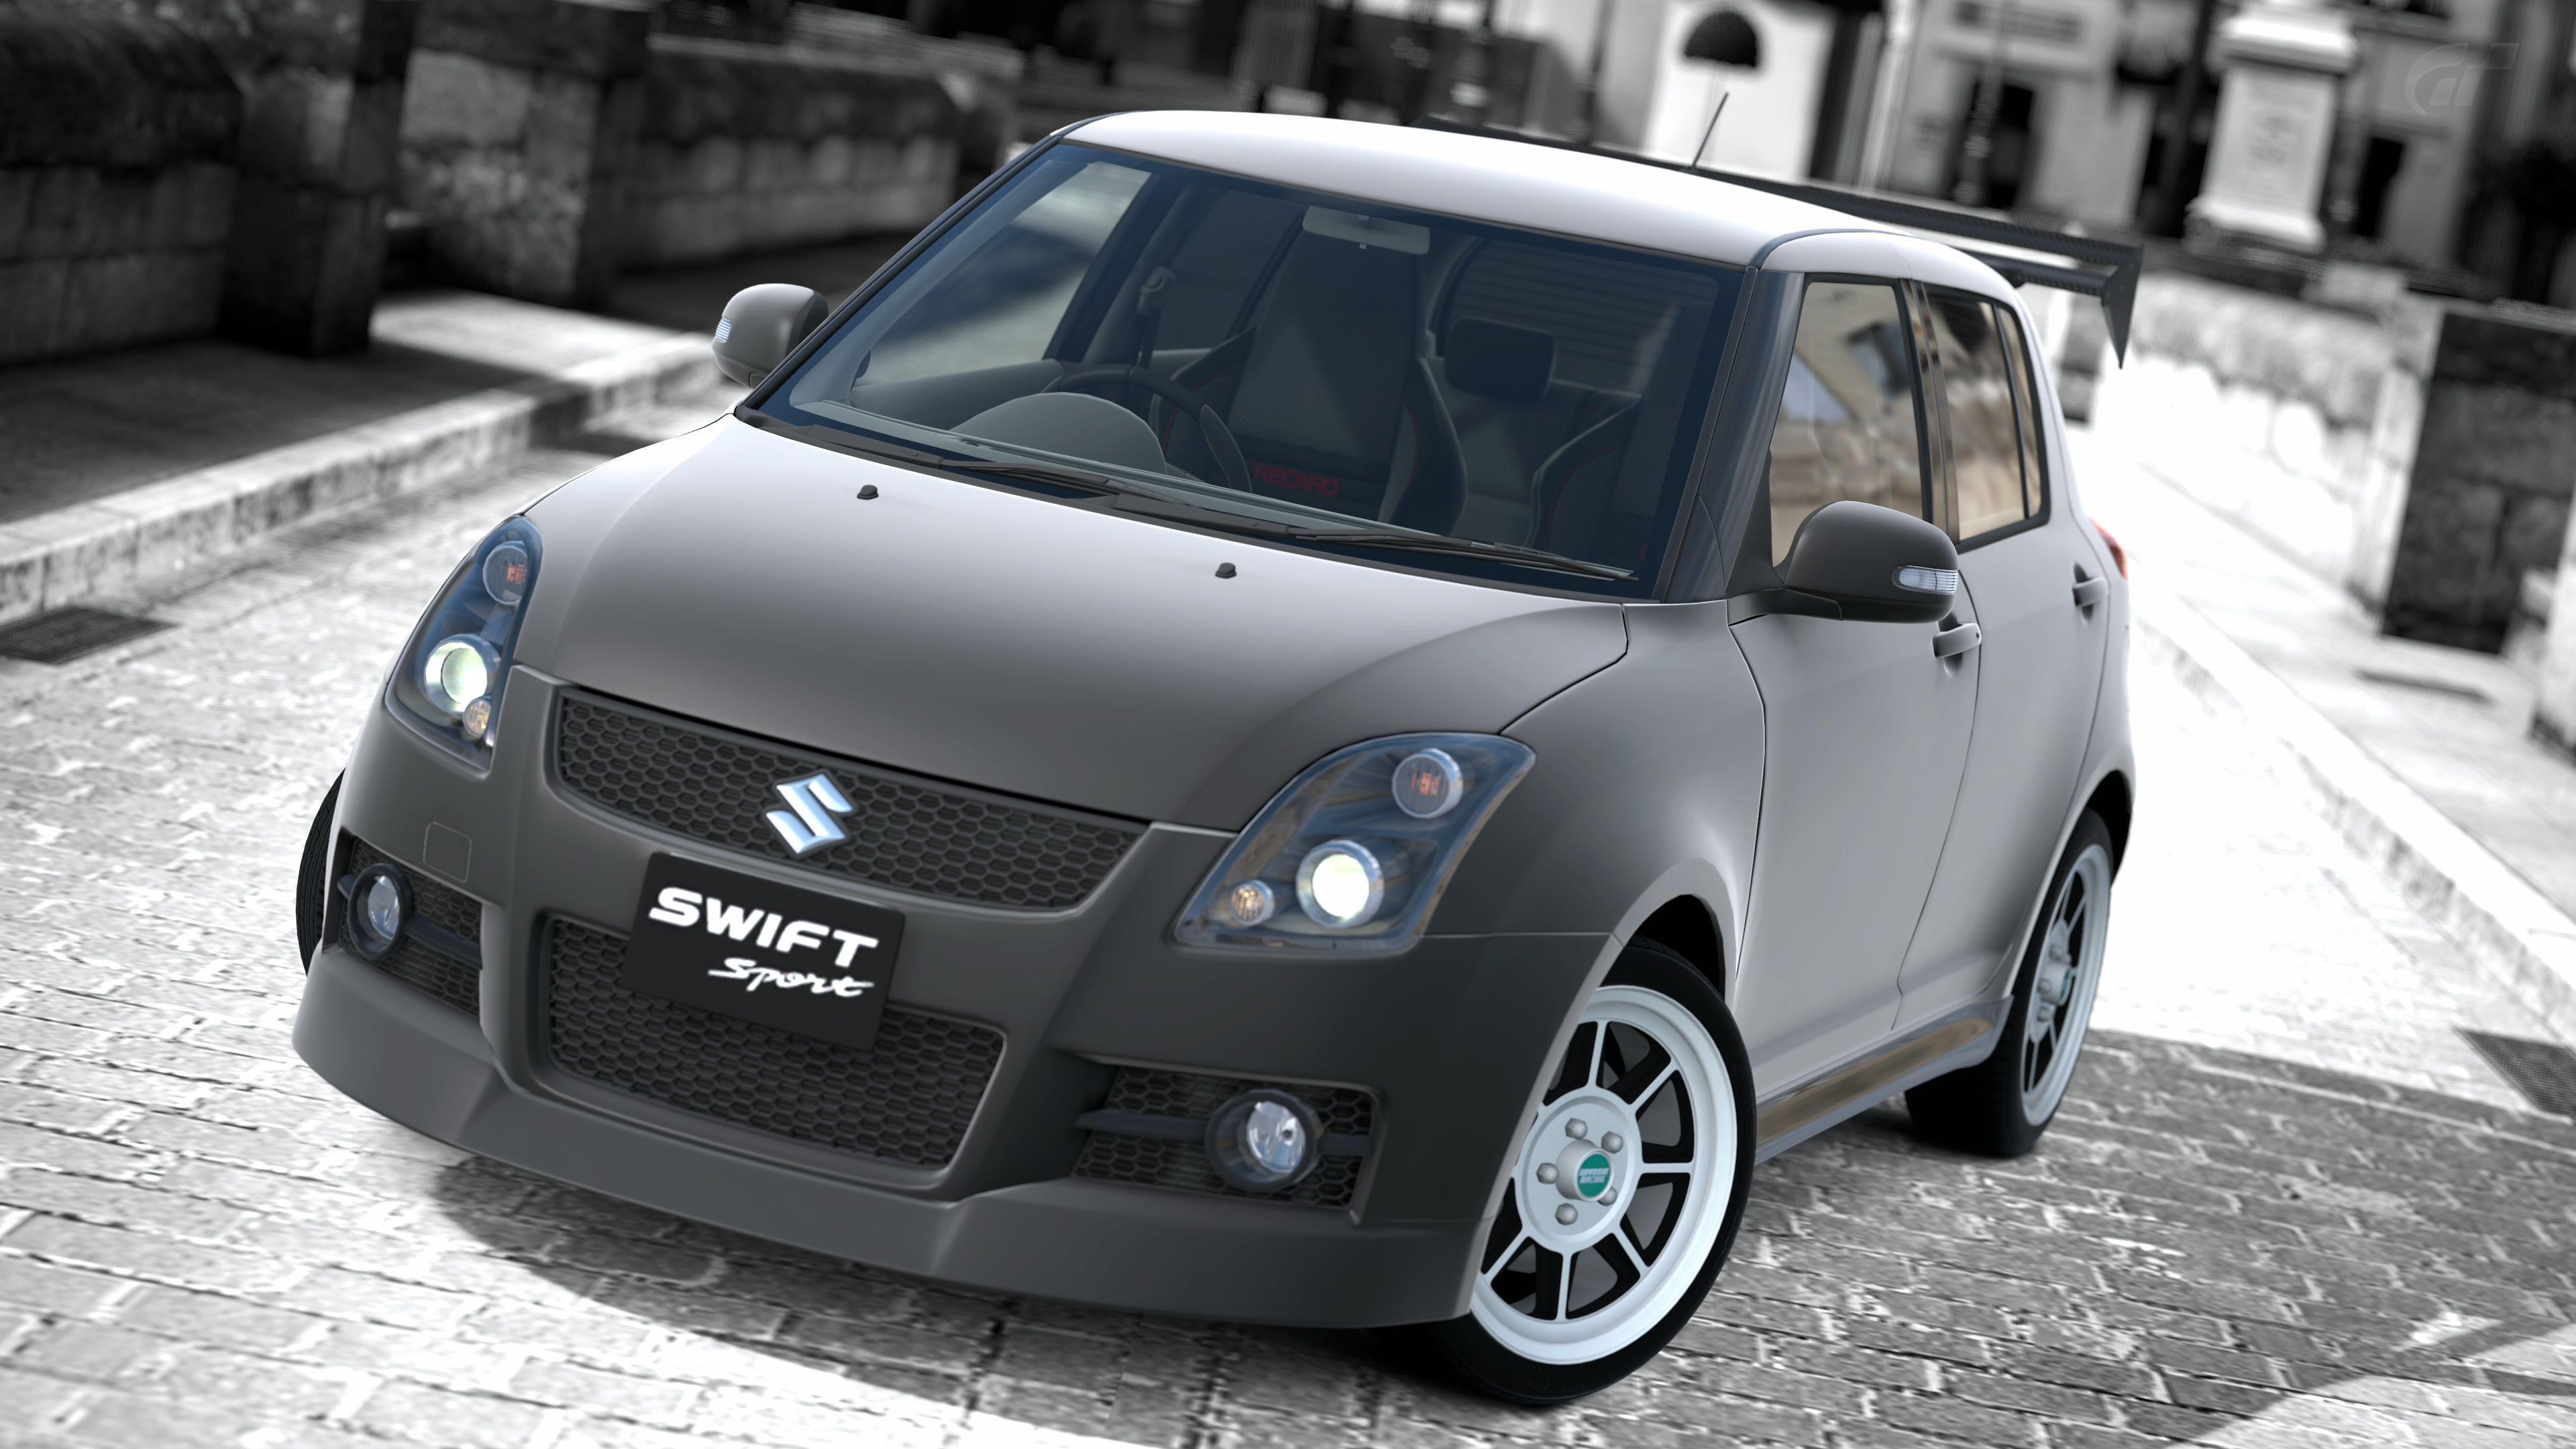 Suzuki Swift Sport Wallpaper Image Photo Picture Background